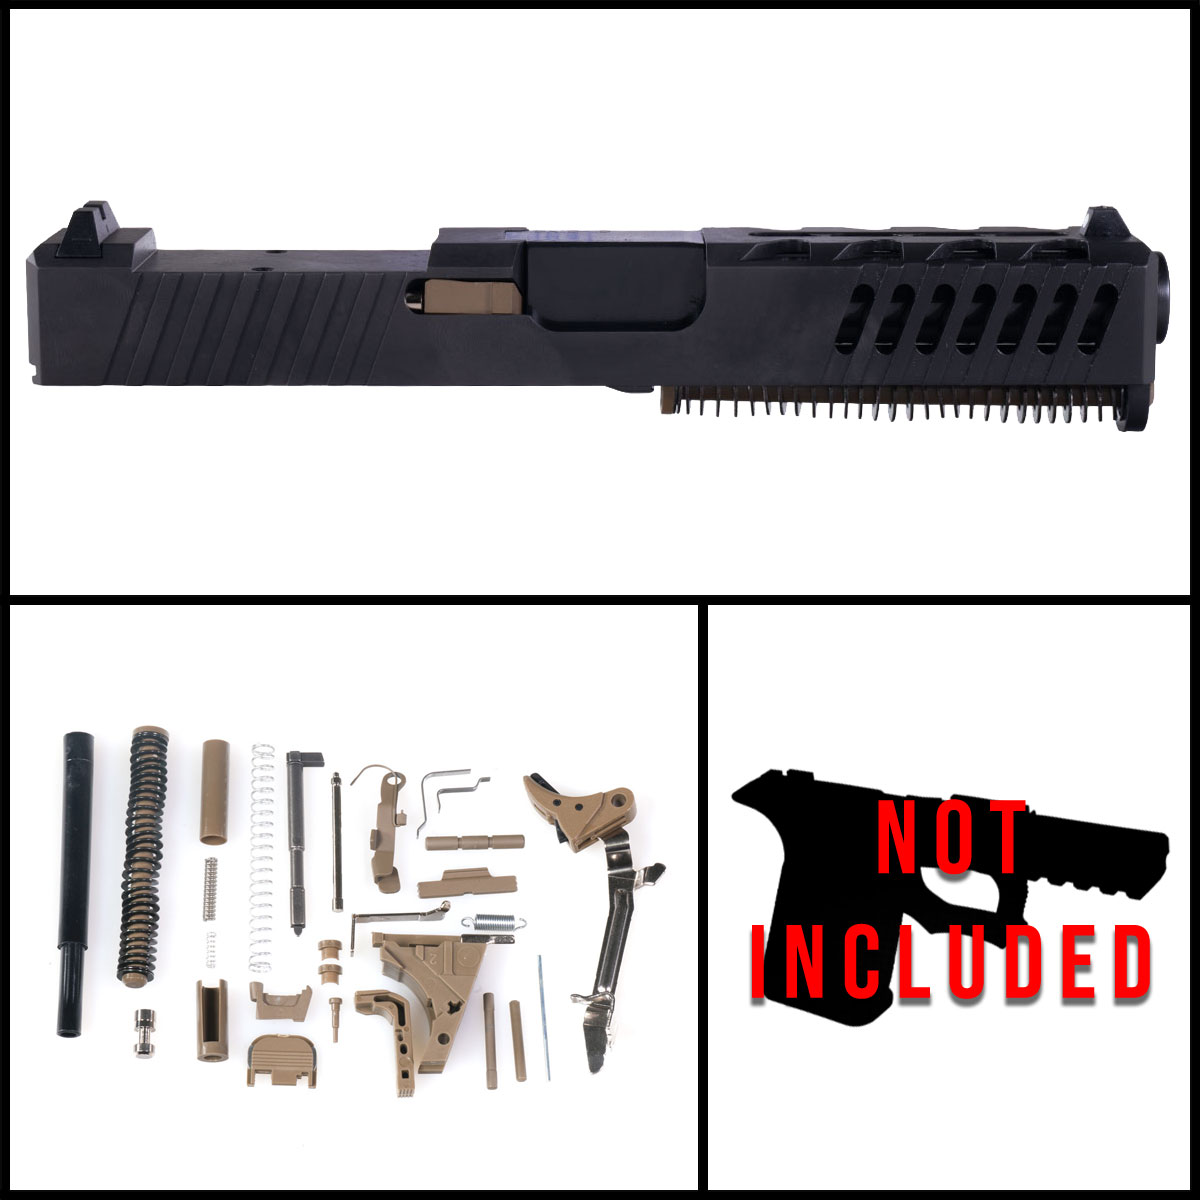 DTT 'Khaki' 9mm Full Pistol Build Kit (Everything Minus Frame) - Glock 19 Gen 1-3 Compatible